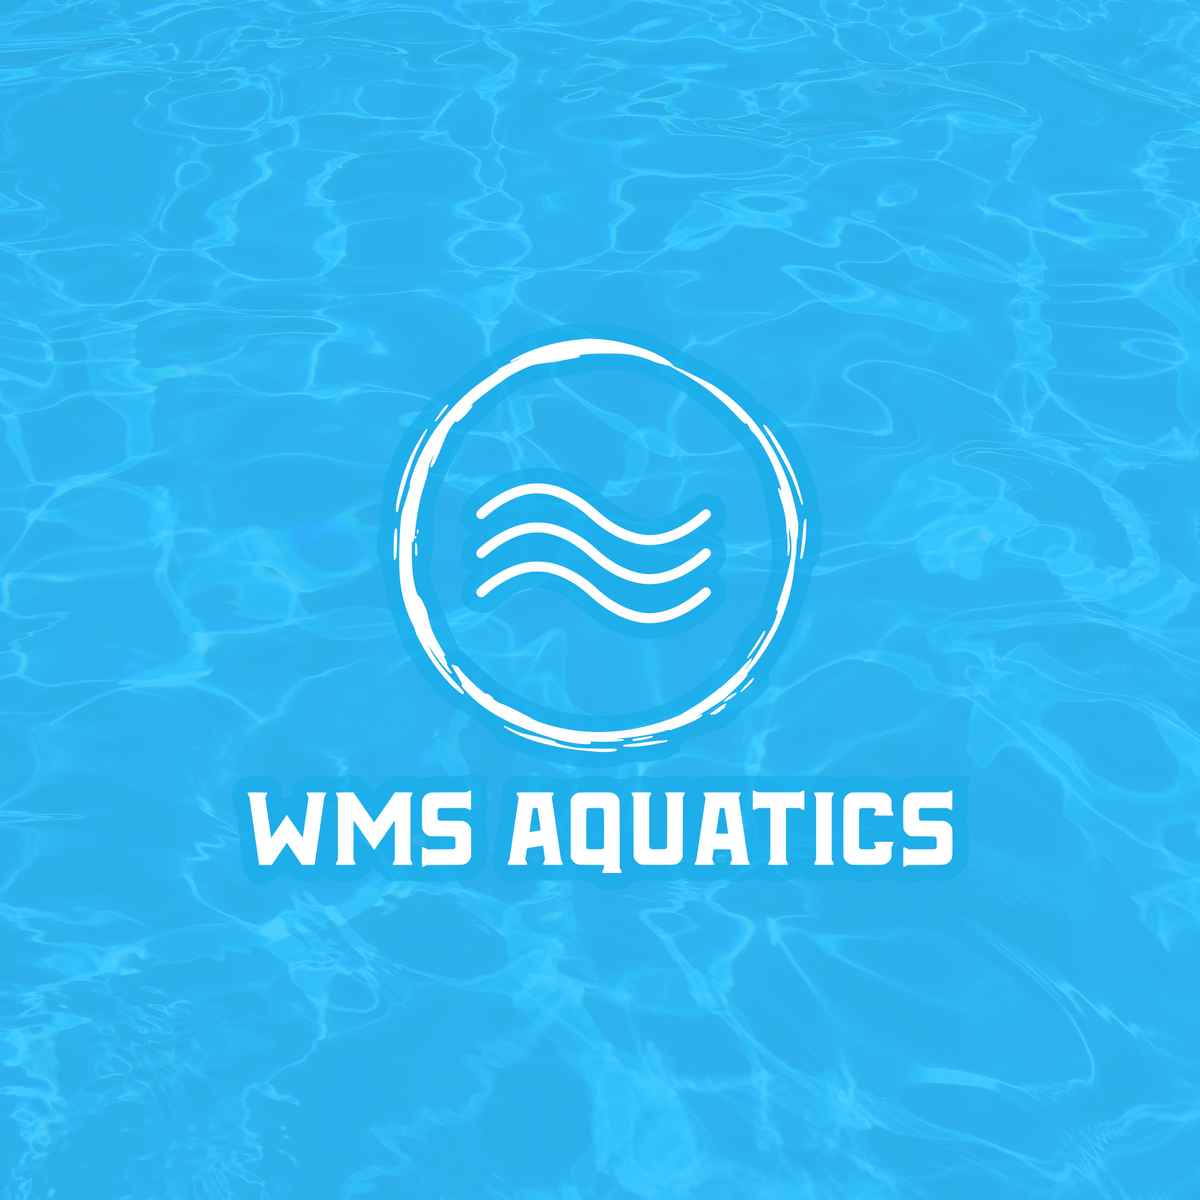 WMS Aquatics